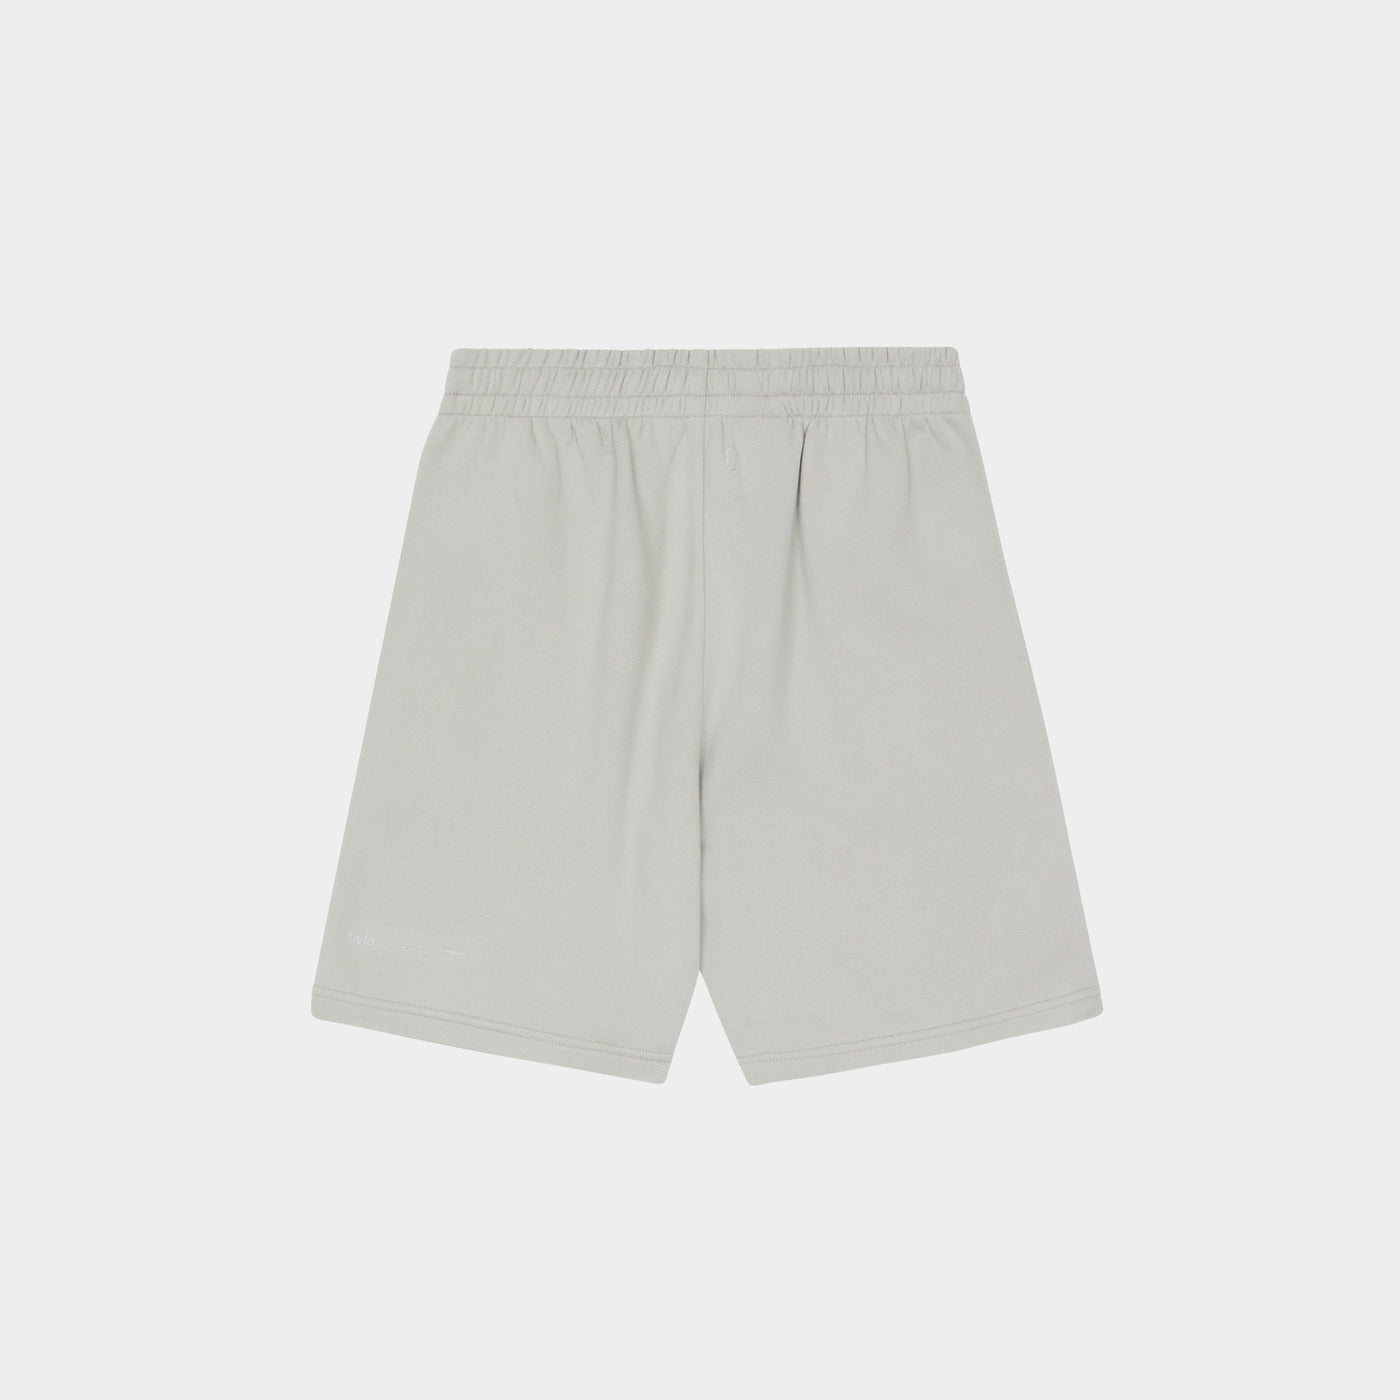 Men's Shorts - Slate